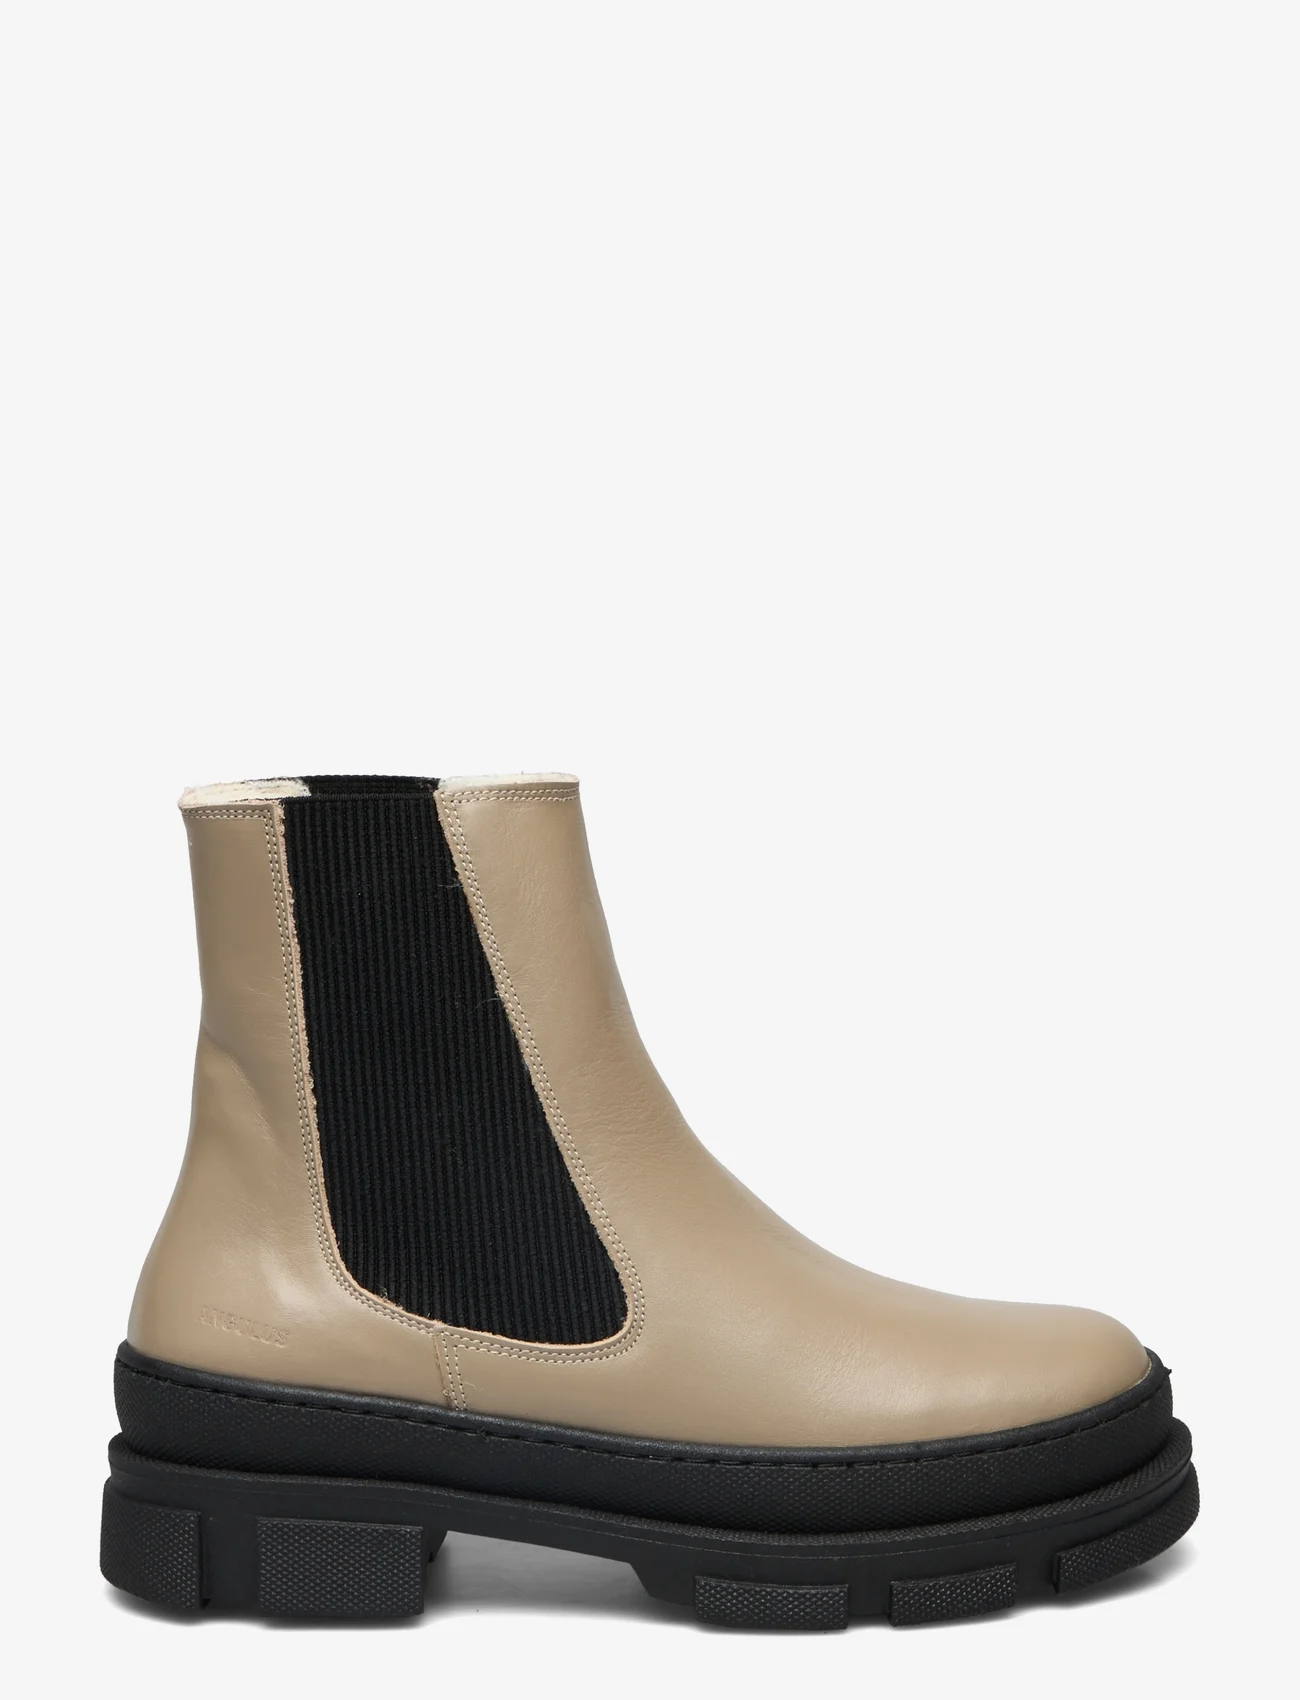 ANGULUS - Boots - flat - chelsea boots - 1571/019 beige/black - 1